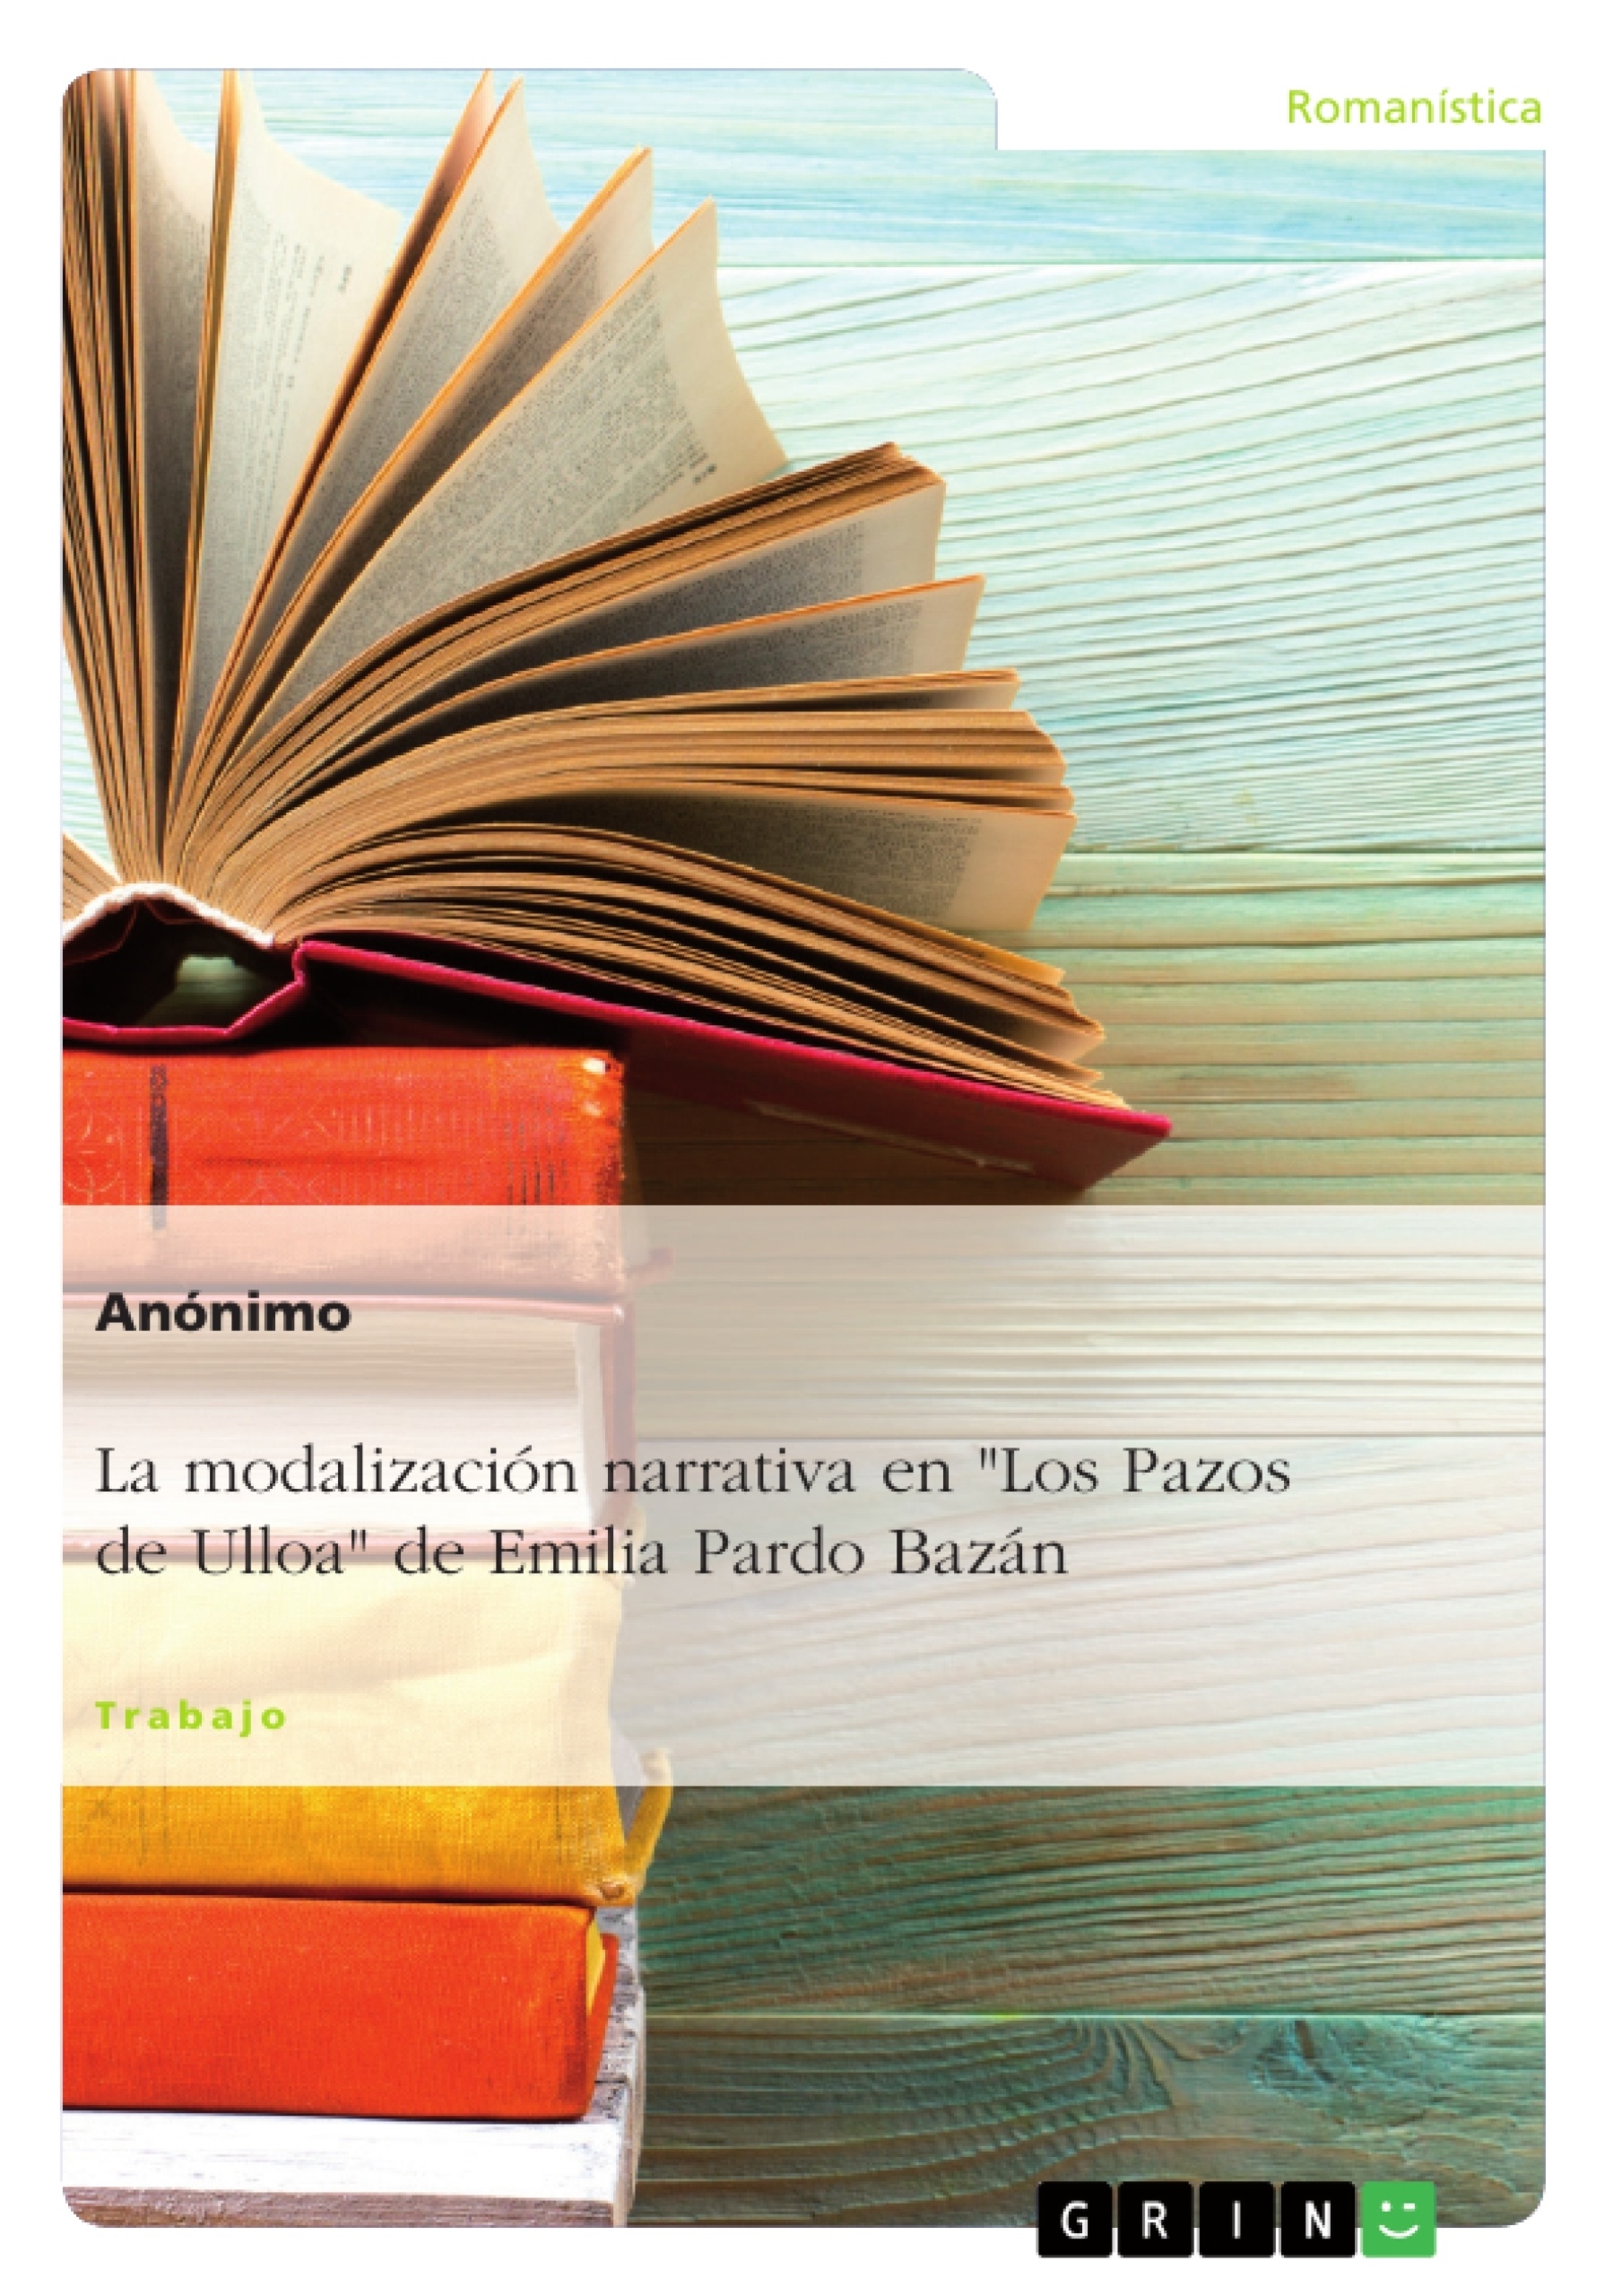 Titre: La modalización narrativa en "Los Pazos de Ulloa" de Emilia Pardo Bazán